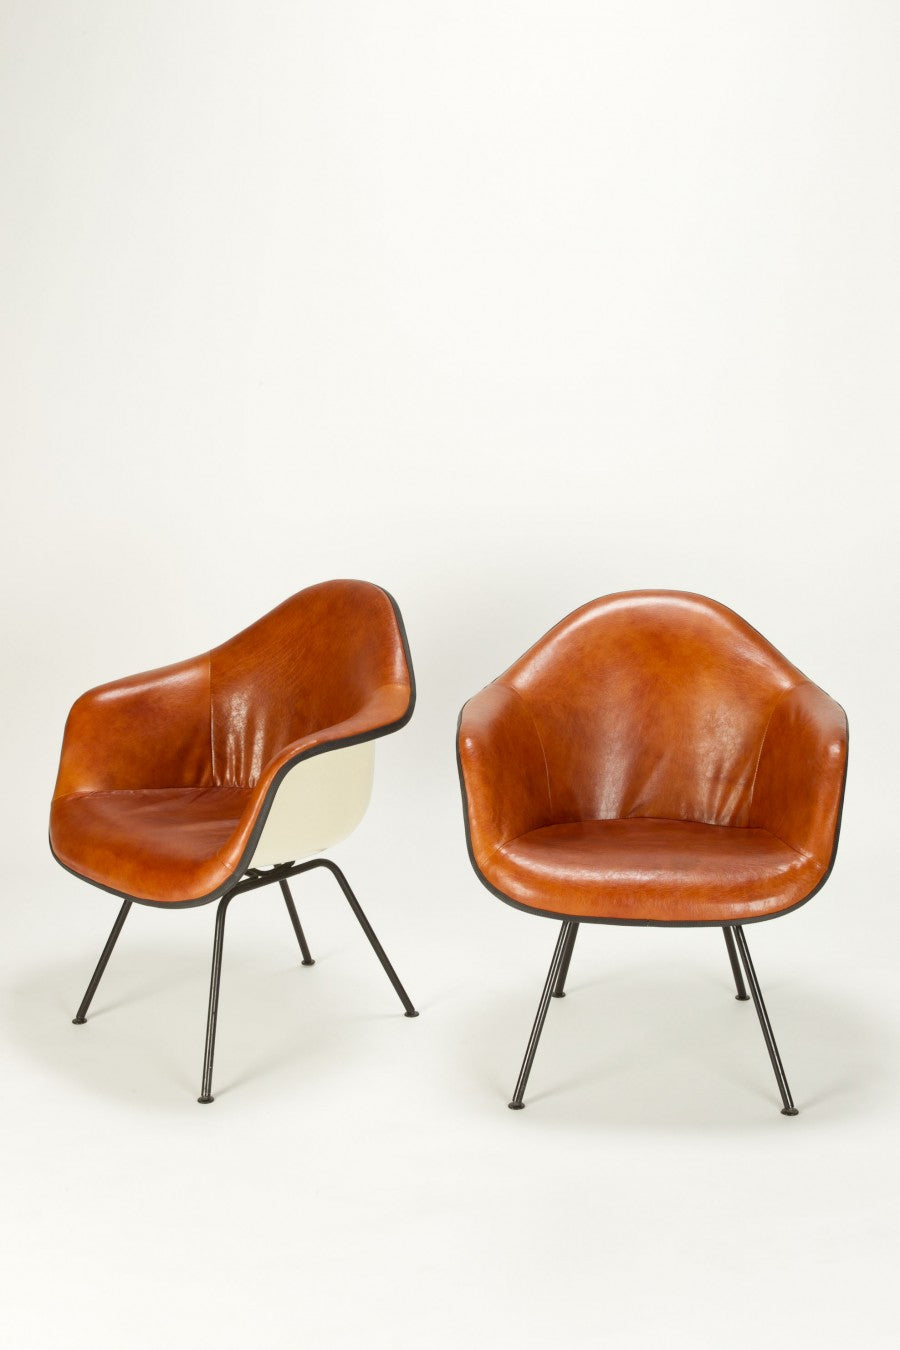 Ein Paar Eames Lounge Ledersschalen von Charles & Ray Eames